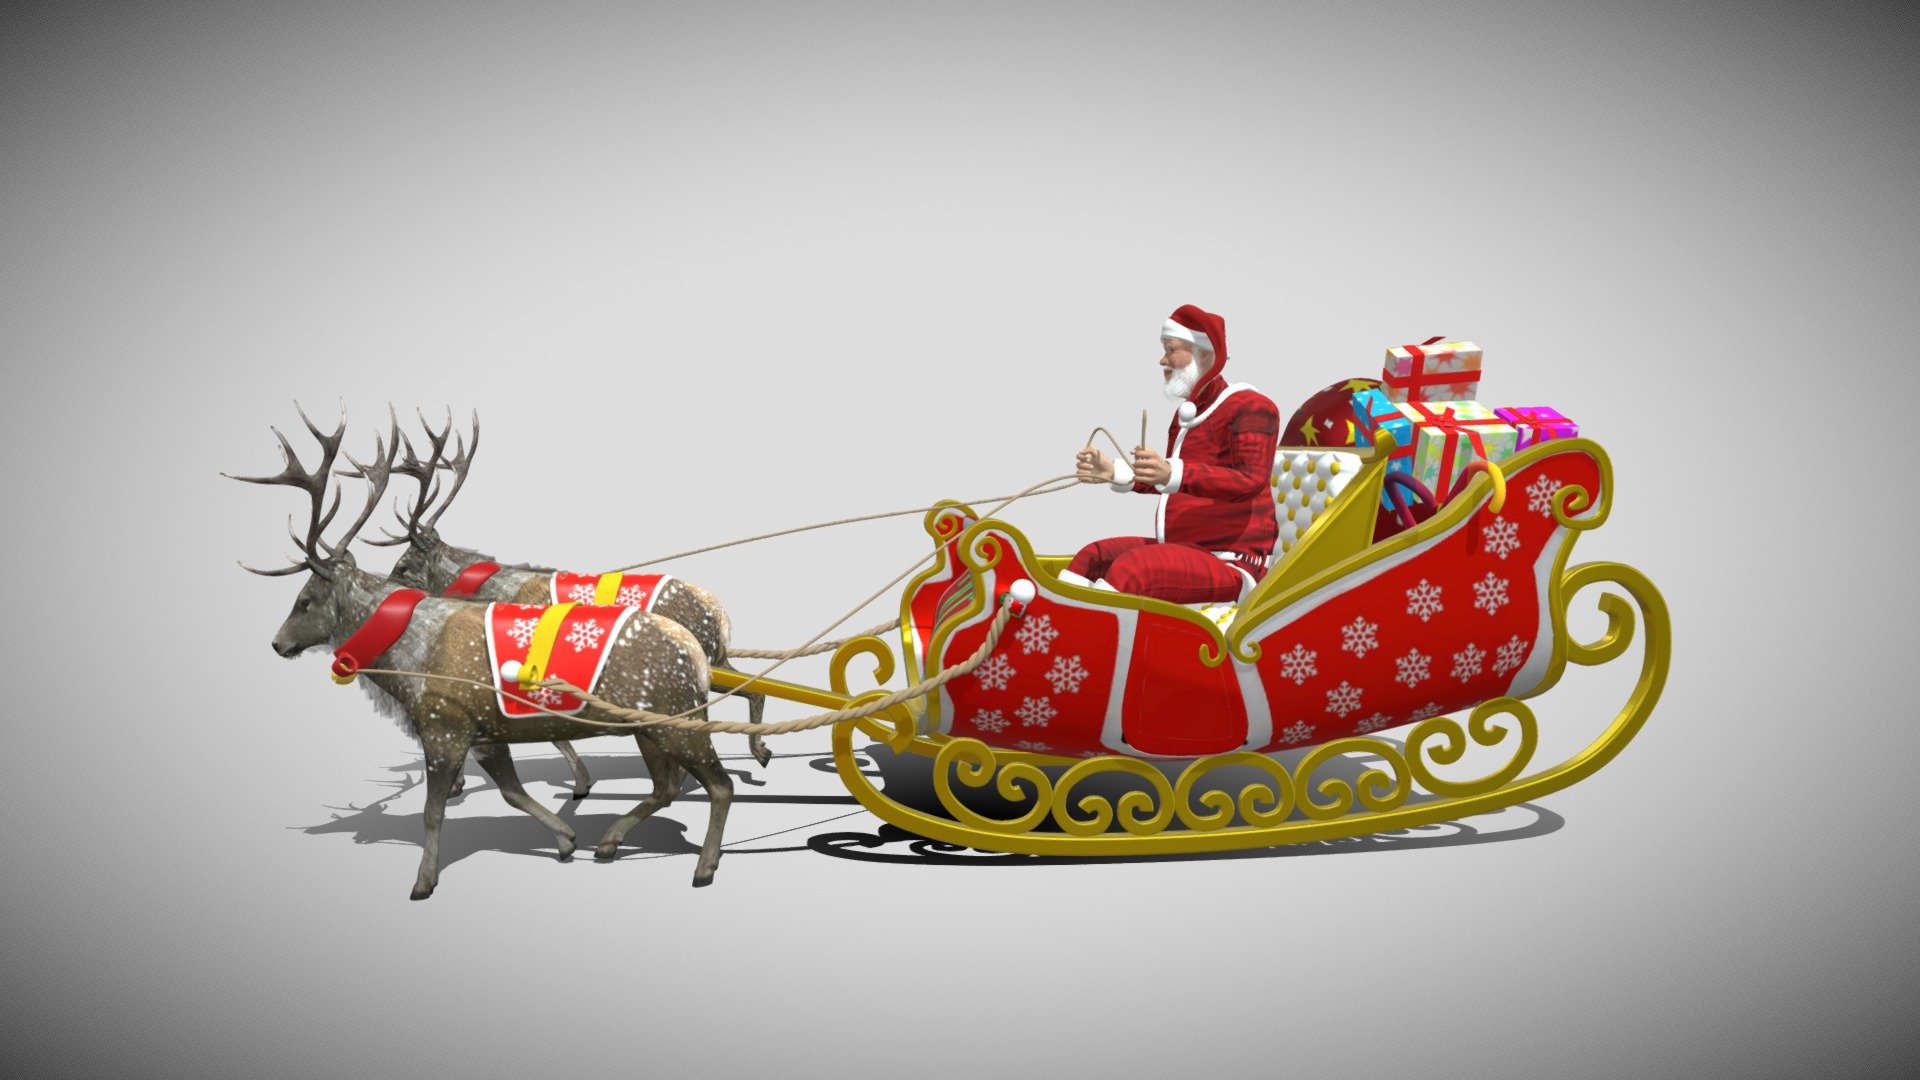 santa claus with reindeers